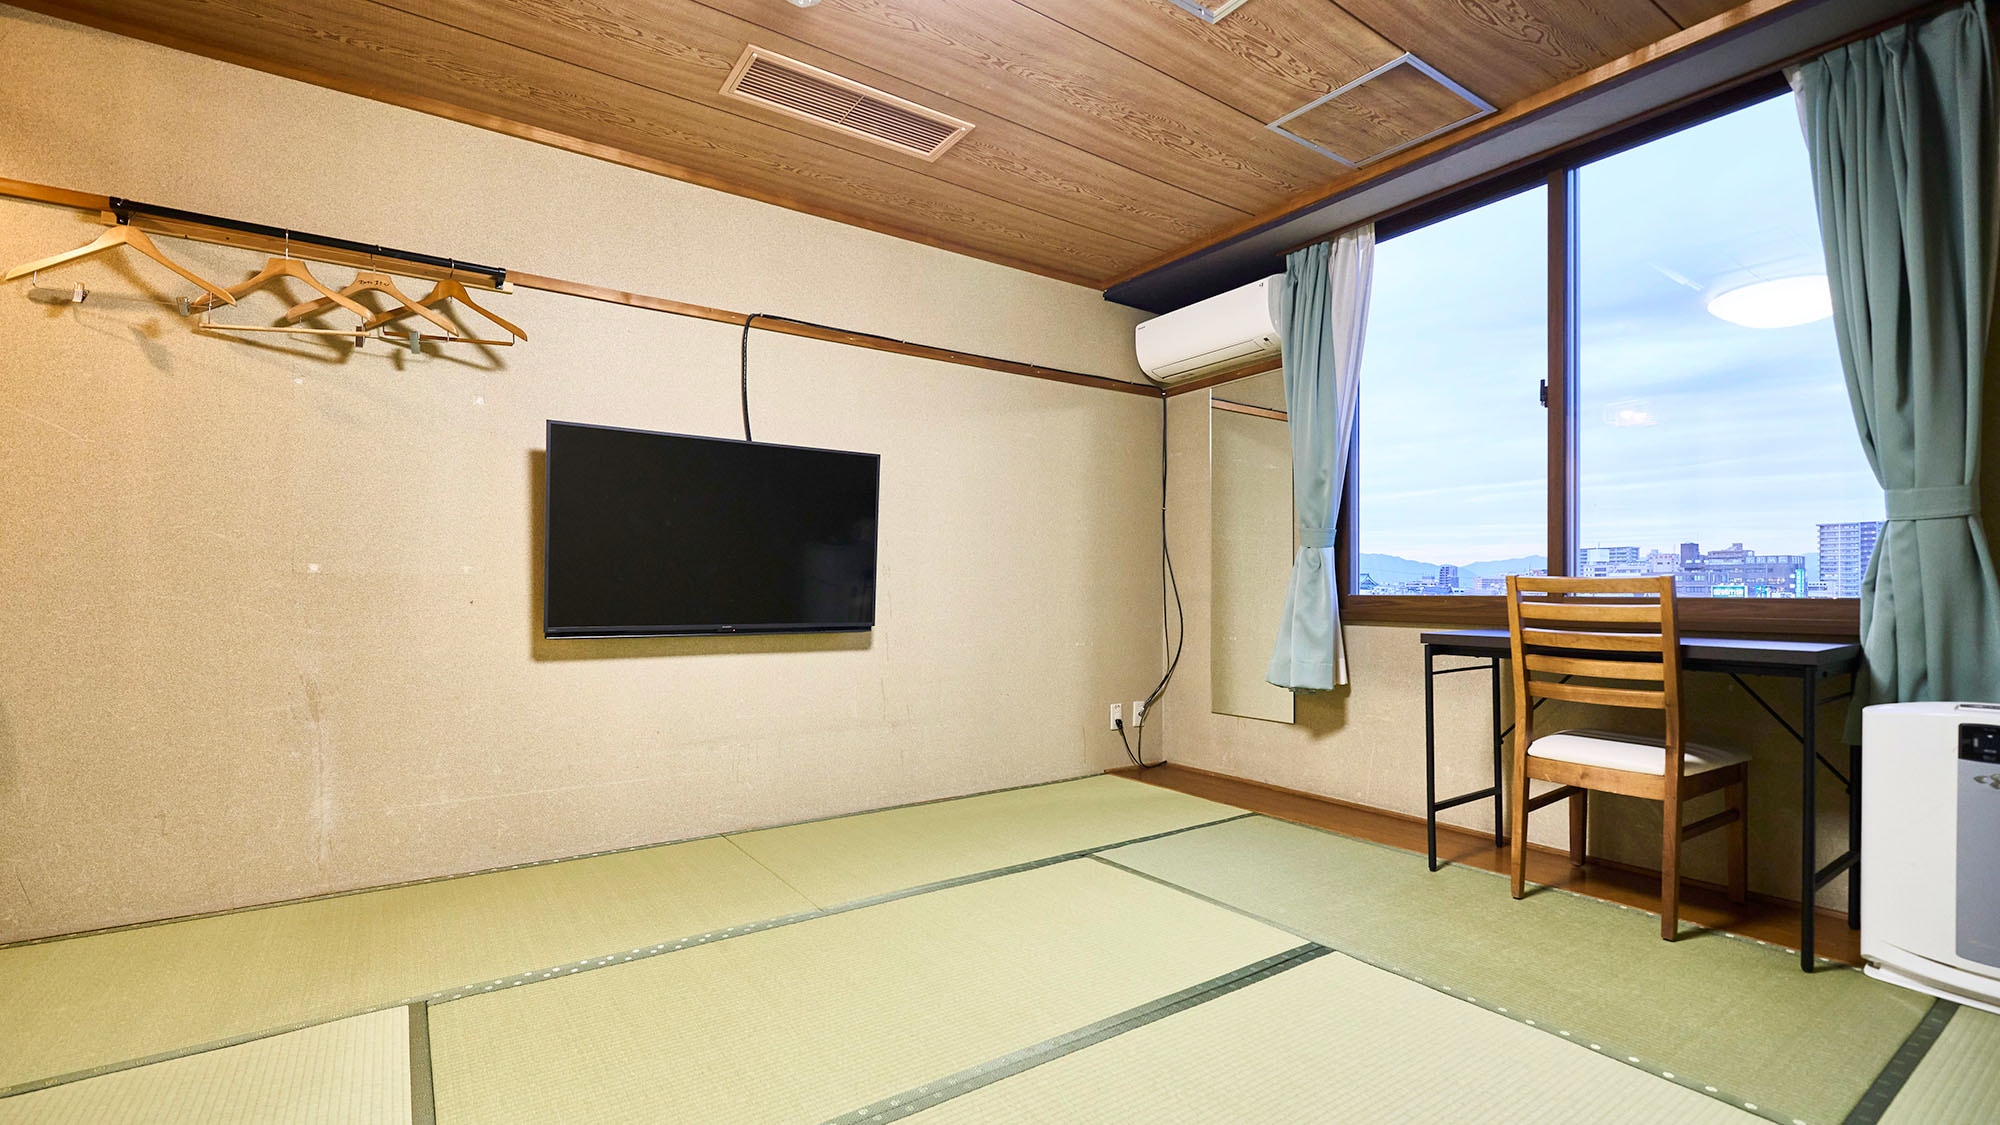 ・【일본식 방 B】 다다미가 기분 좋은 일본식 방. 최대 5명까지 숙박 가능